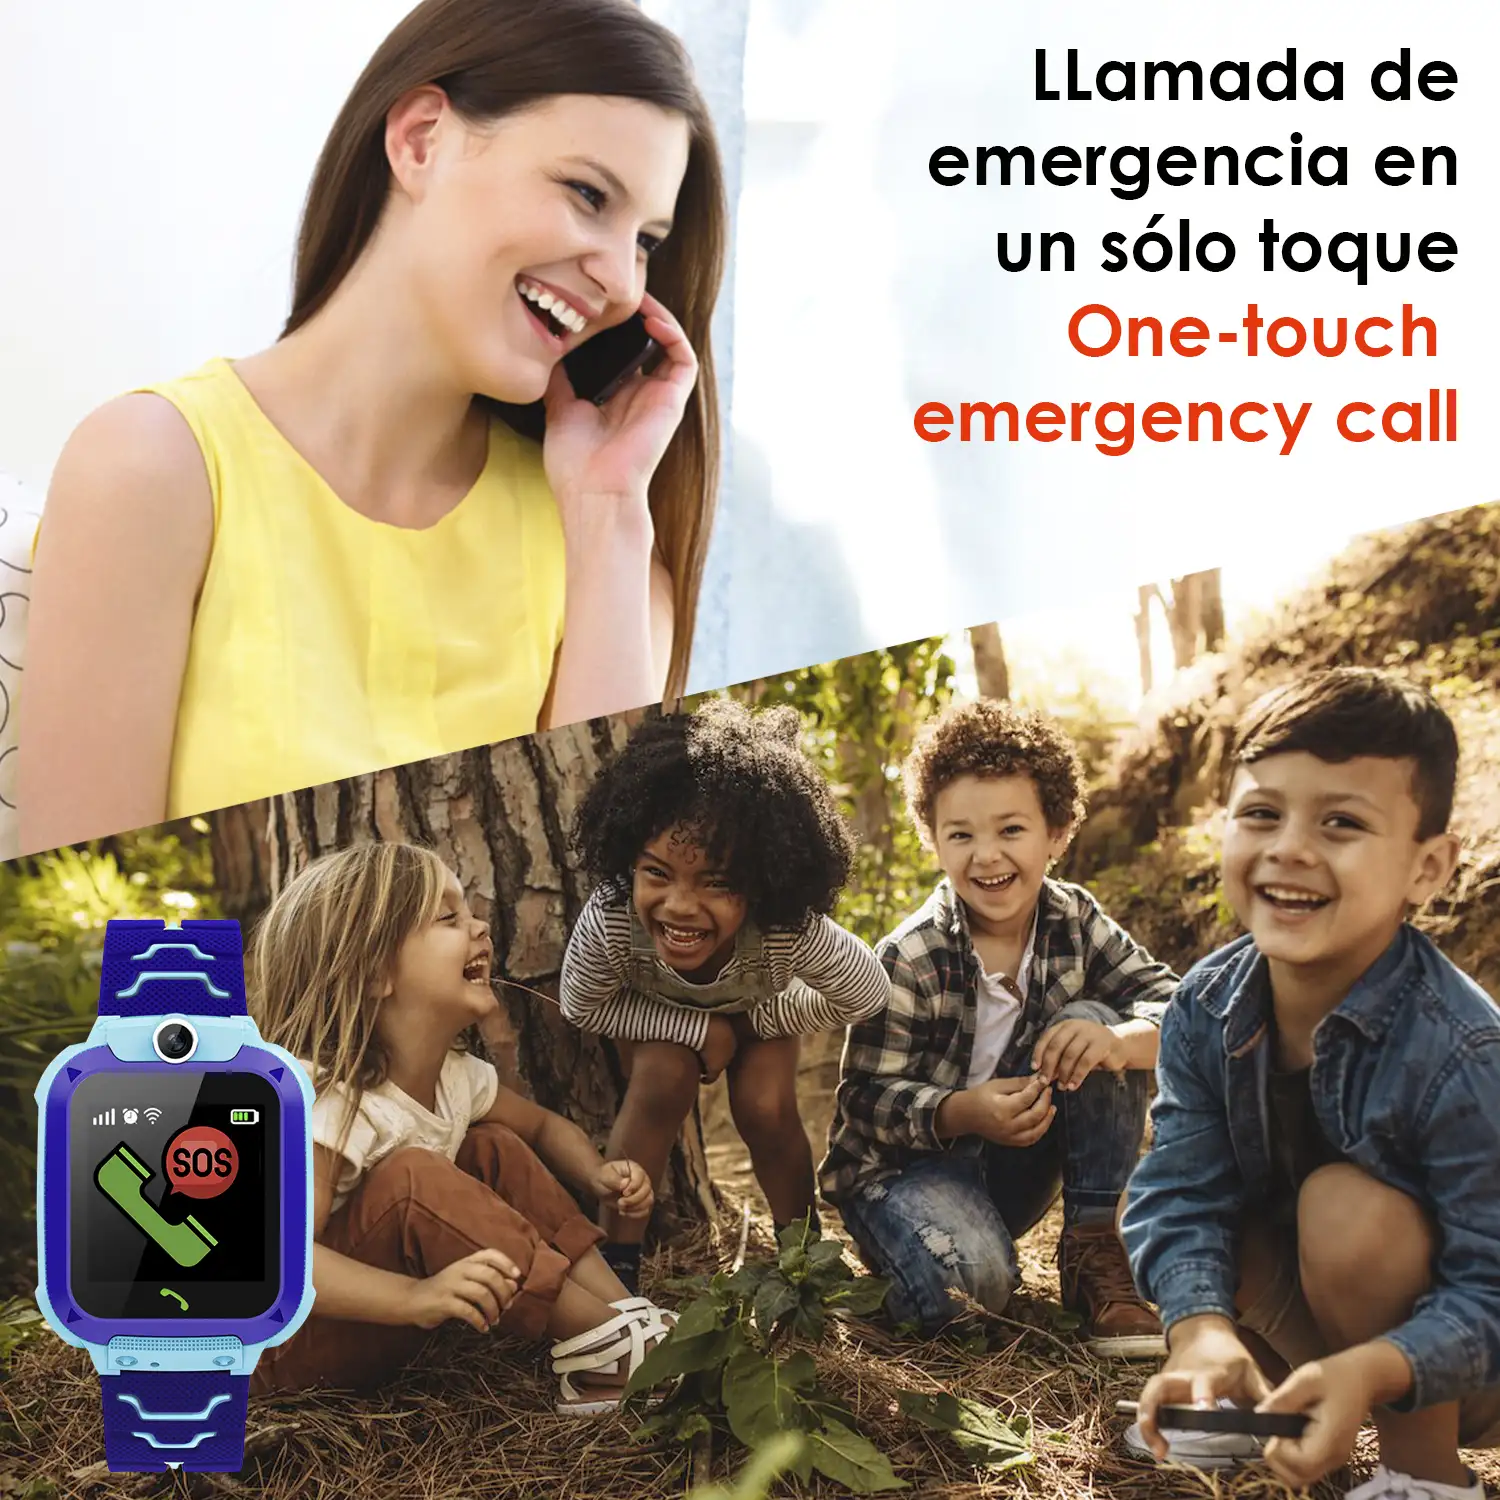 Smartwatch LBS especial para niños, con función de rastreo, llamadas SOS y recepción de llamada.